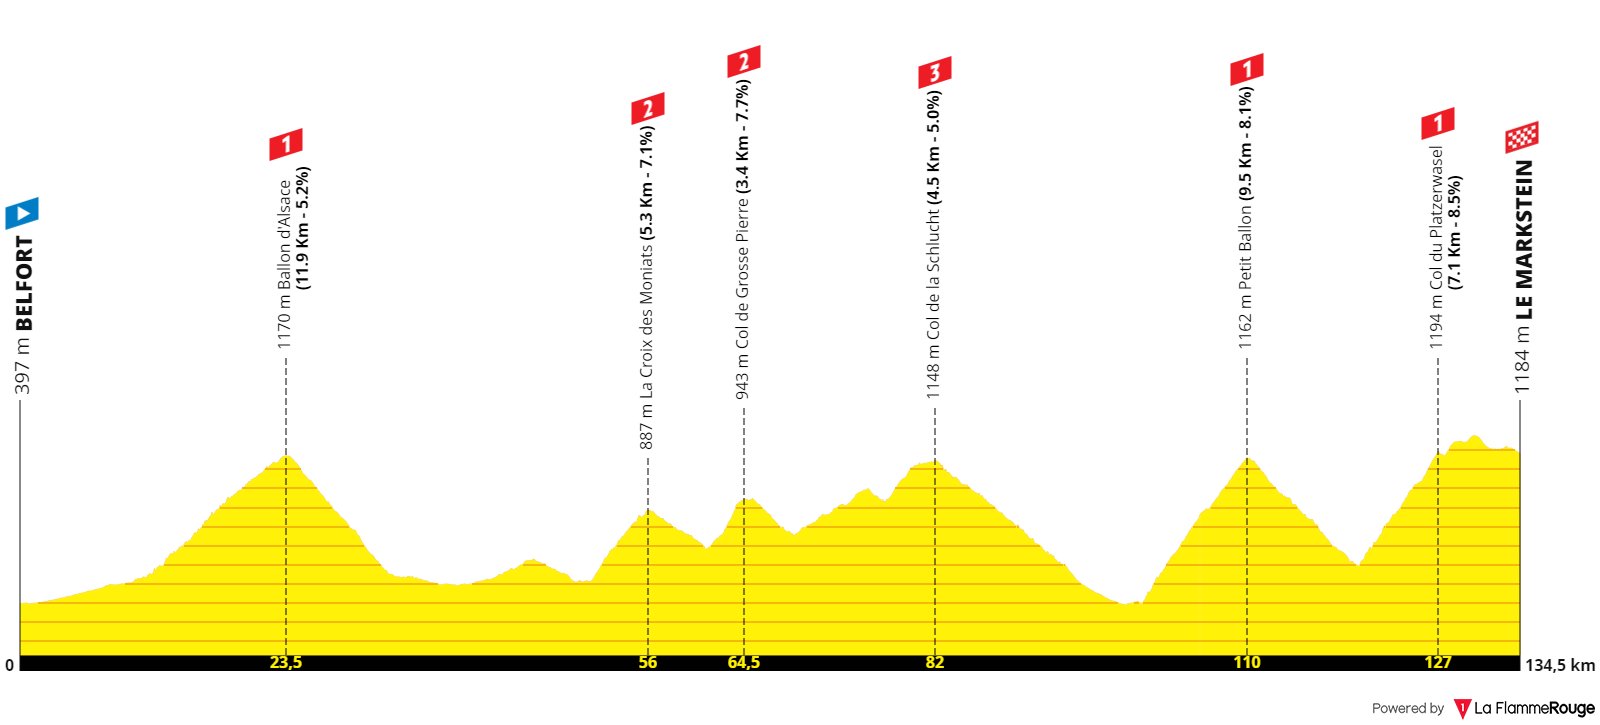 Une belle étape de montagne du Tour de France dans les Vosges en 2023 